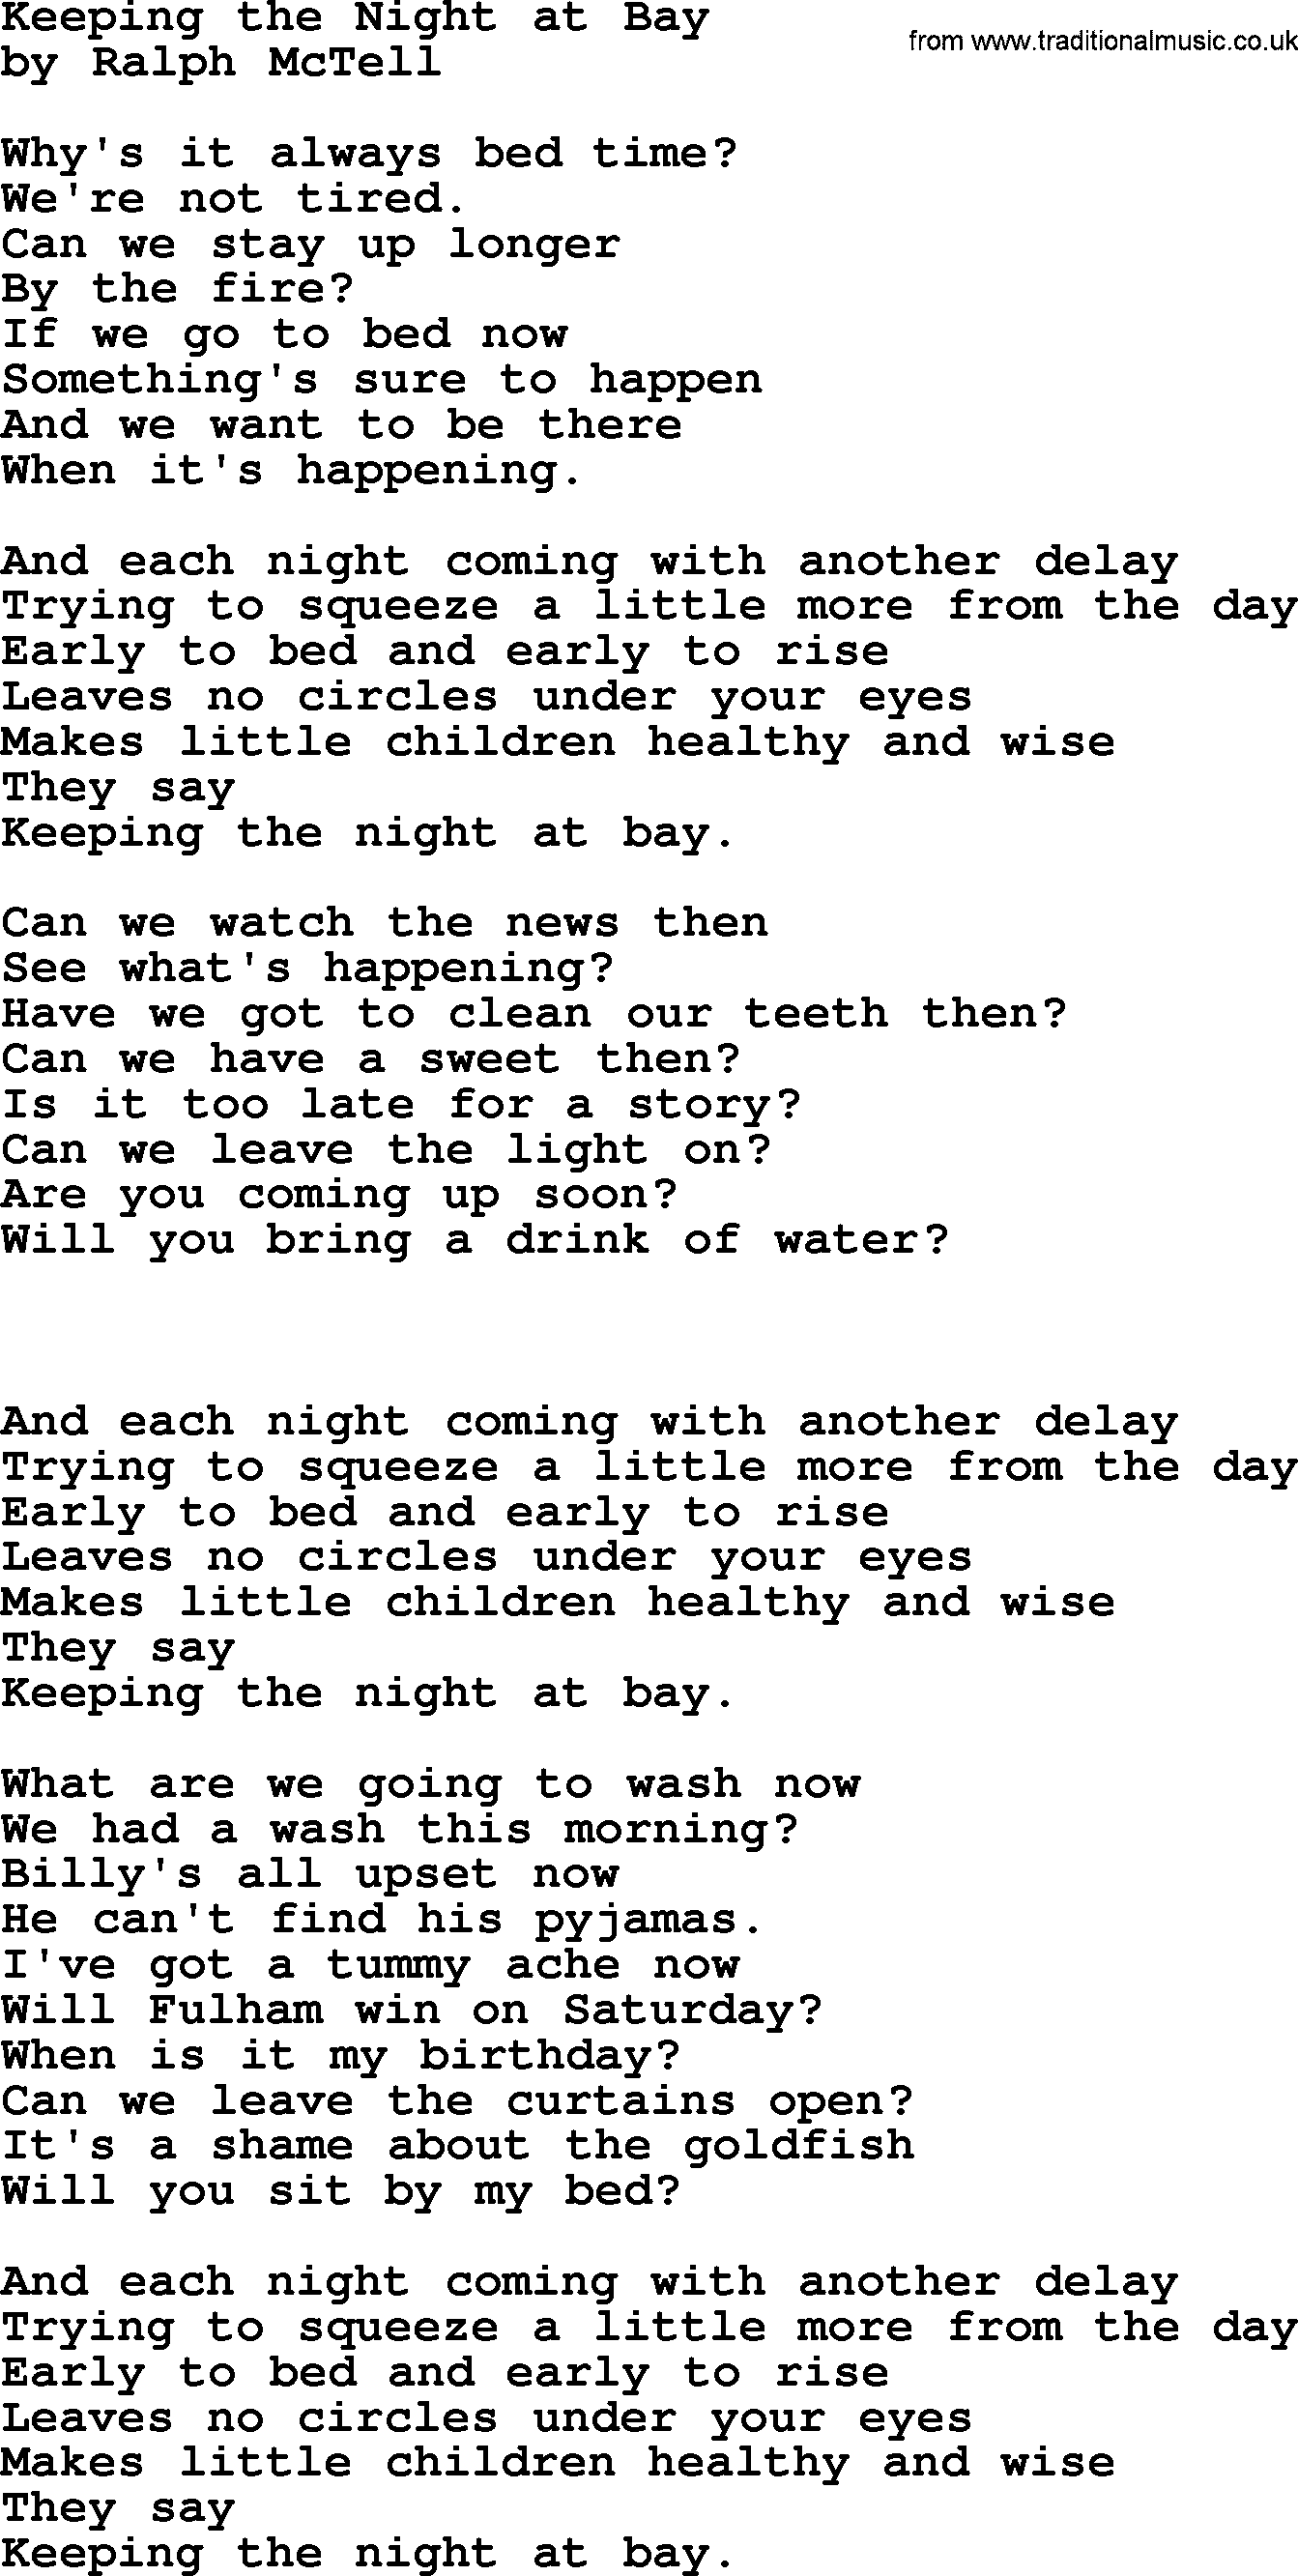 Ralph McTell Song: Keeping The Night At Bay, lyrics